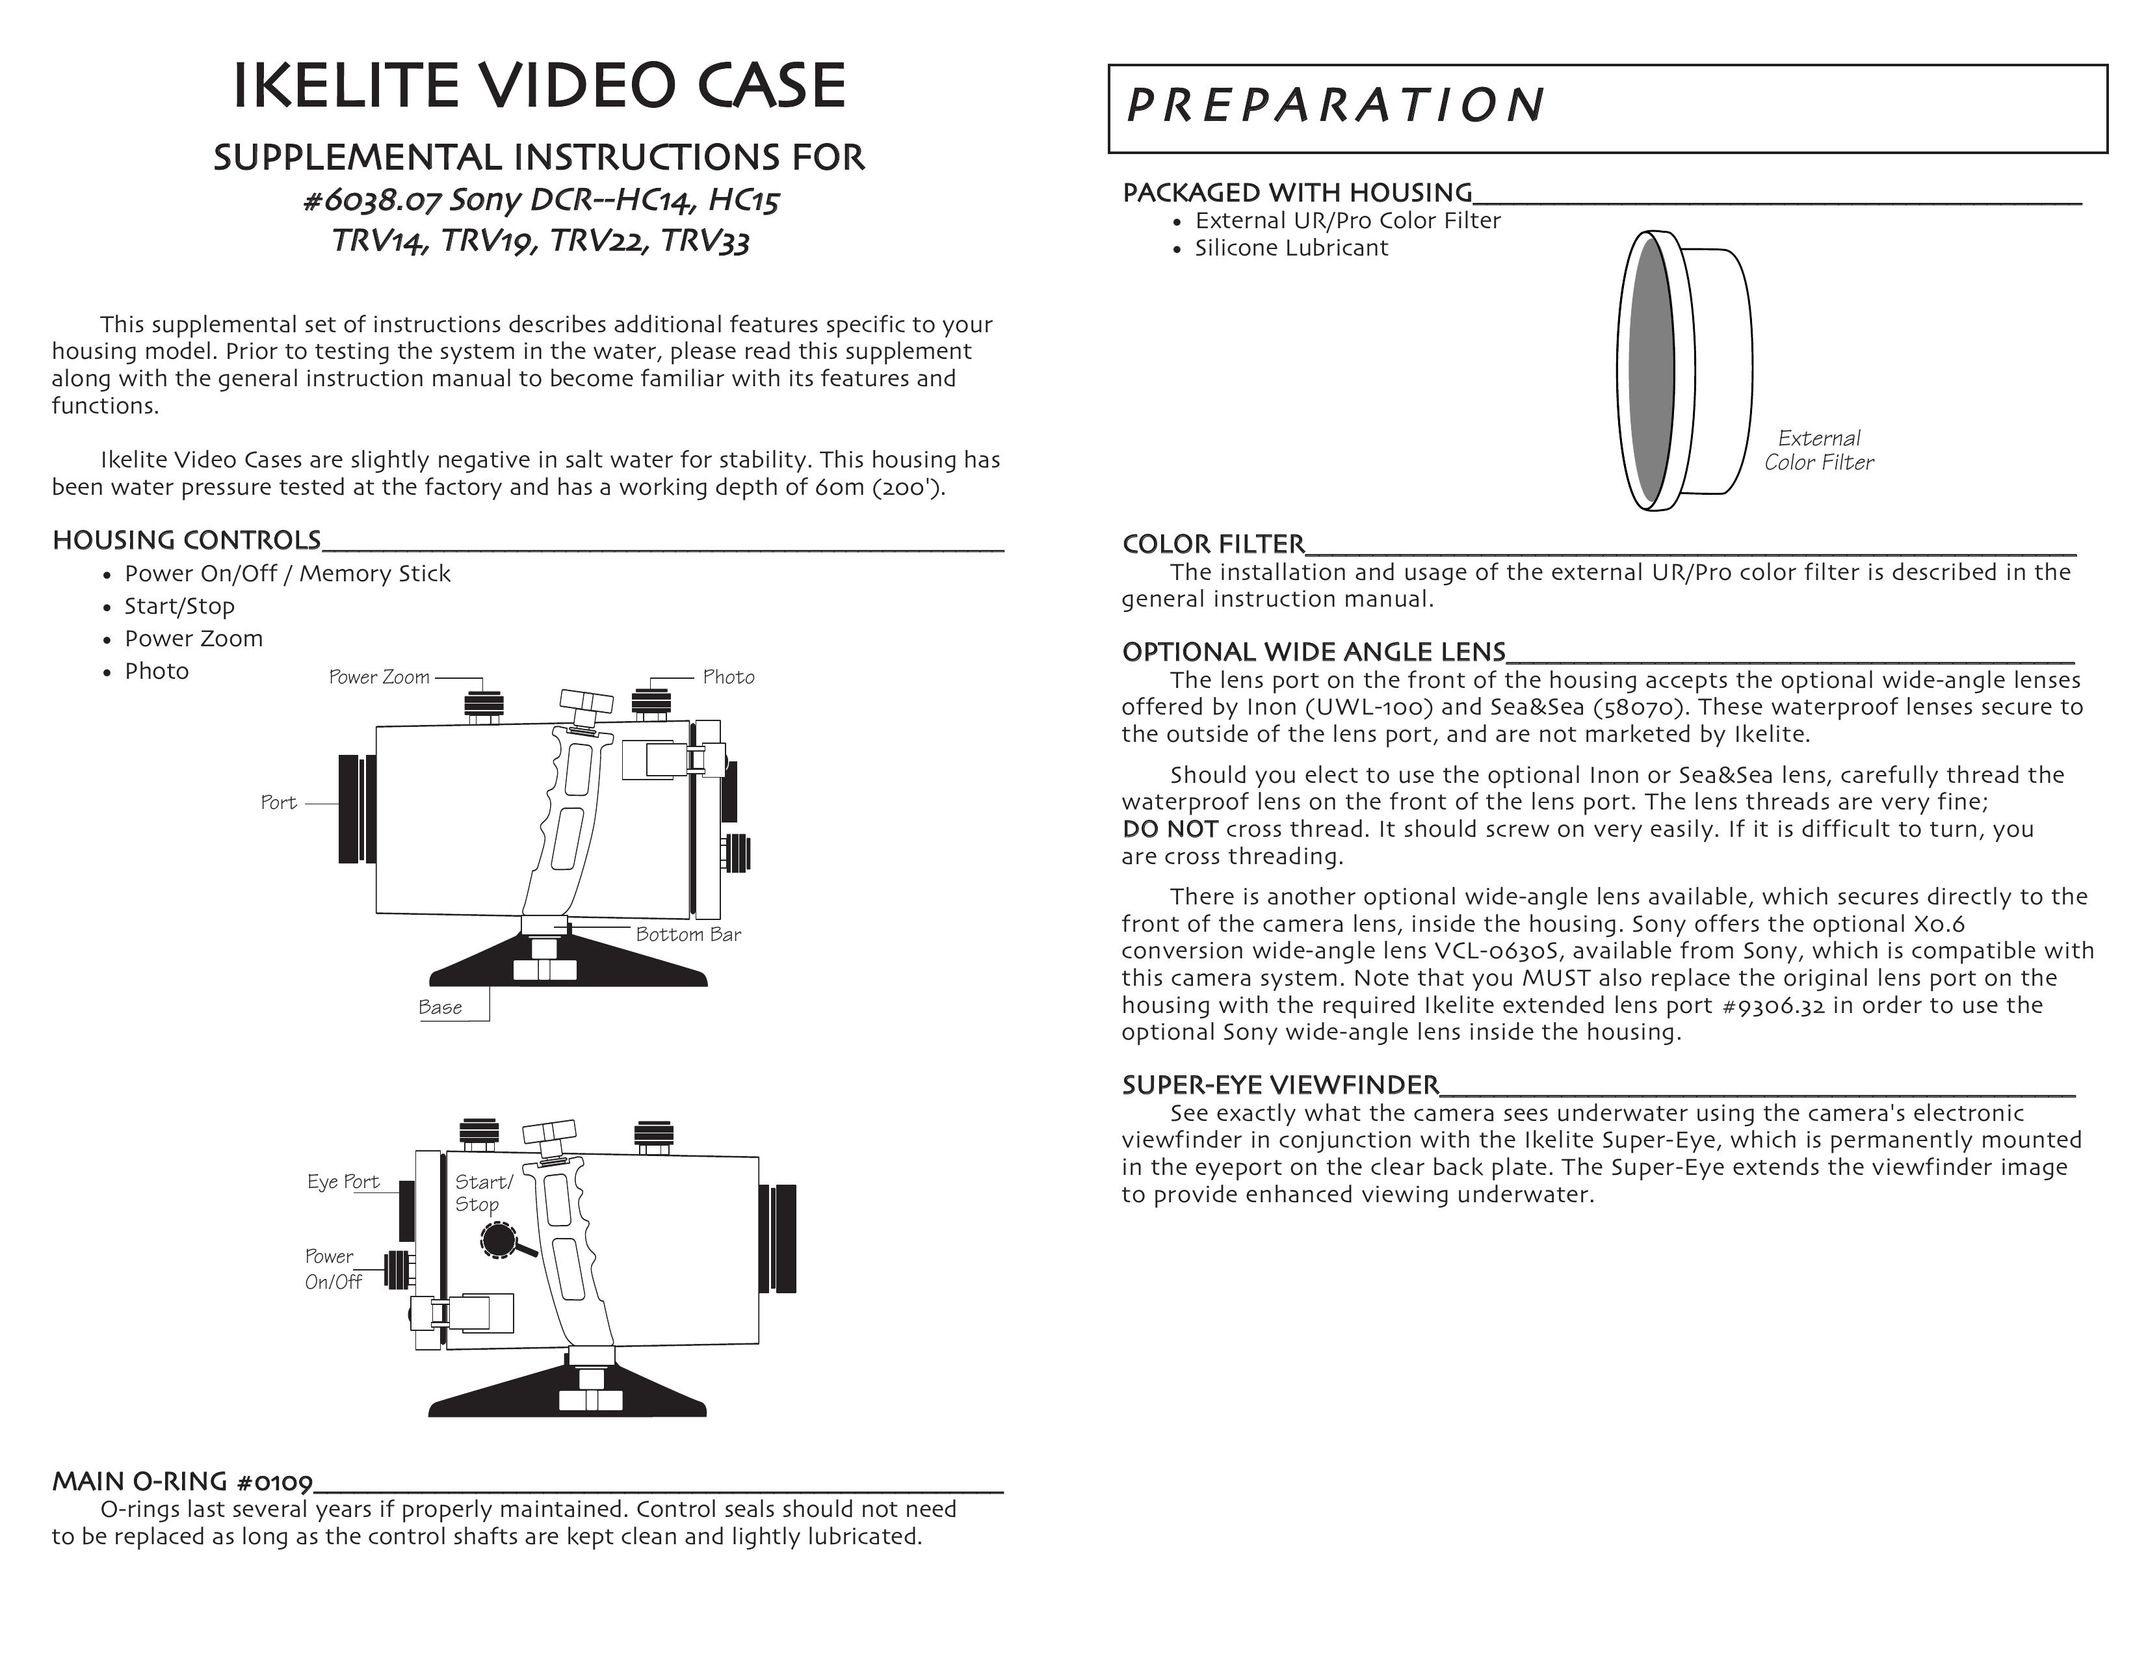 Ikelite DCR-HC15 Carrying Case User Manual